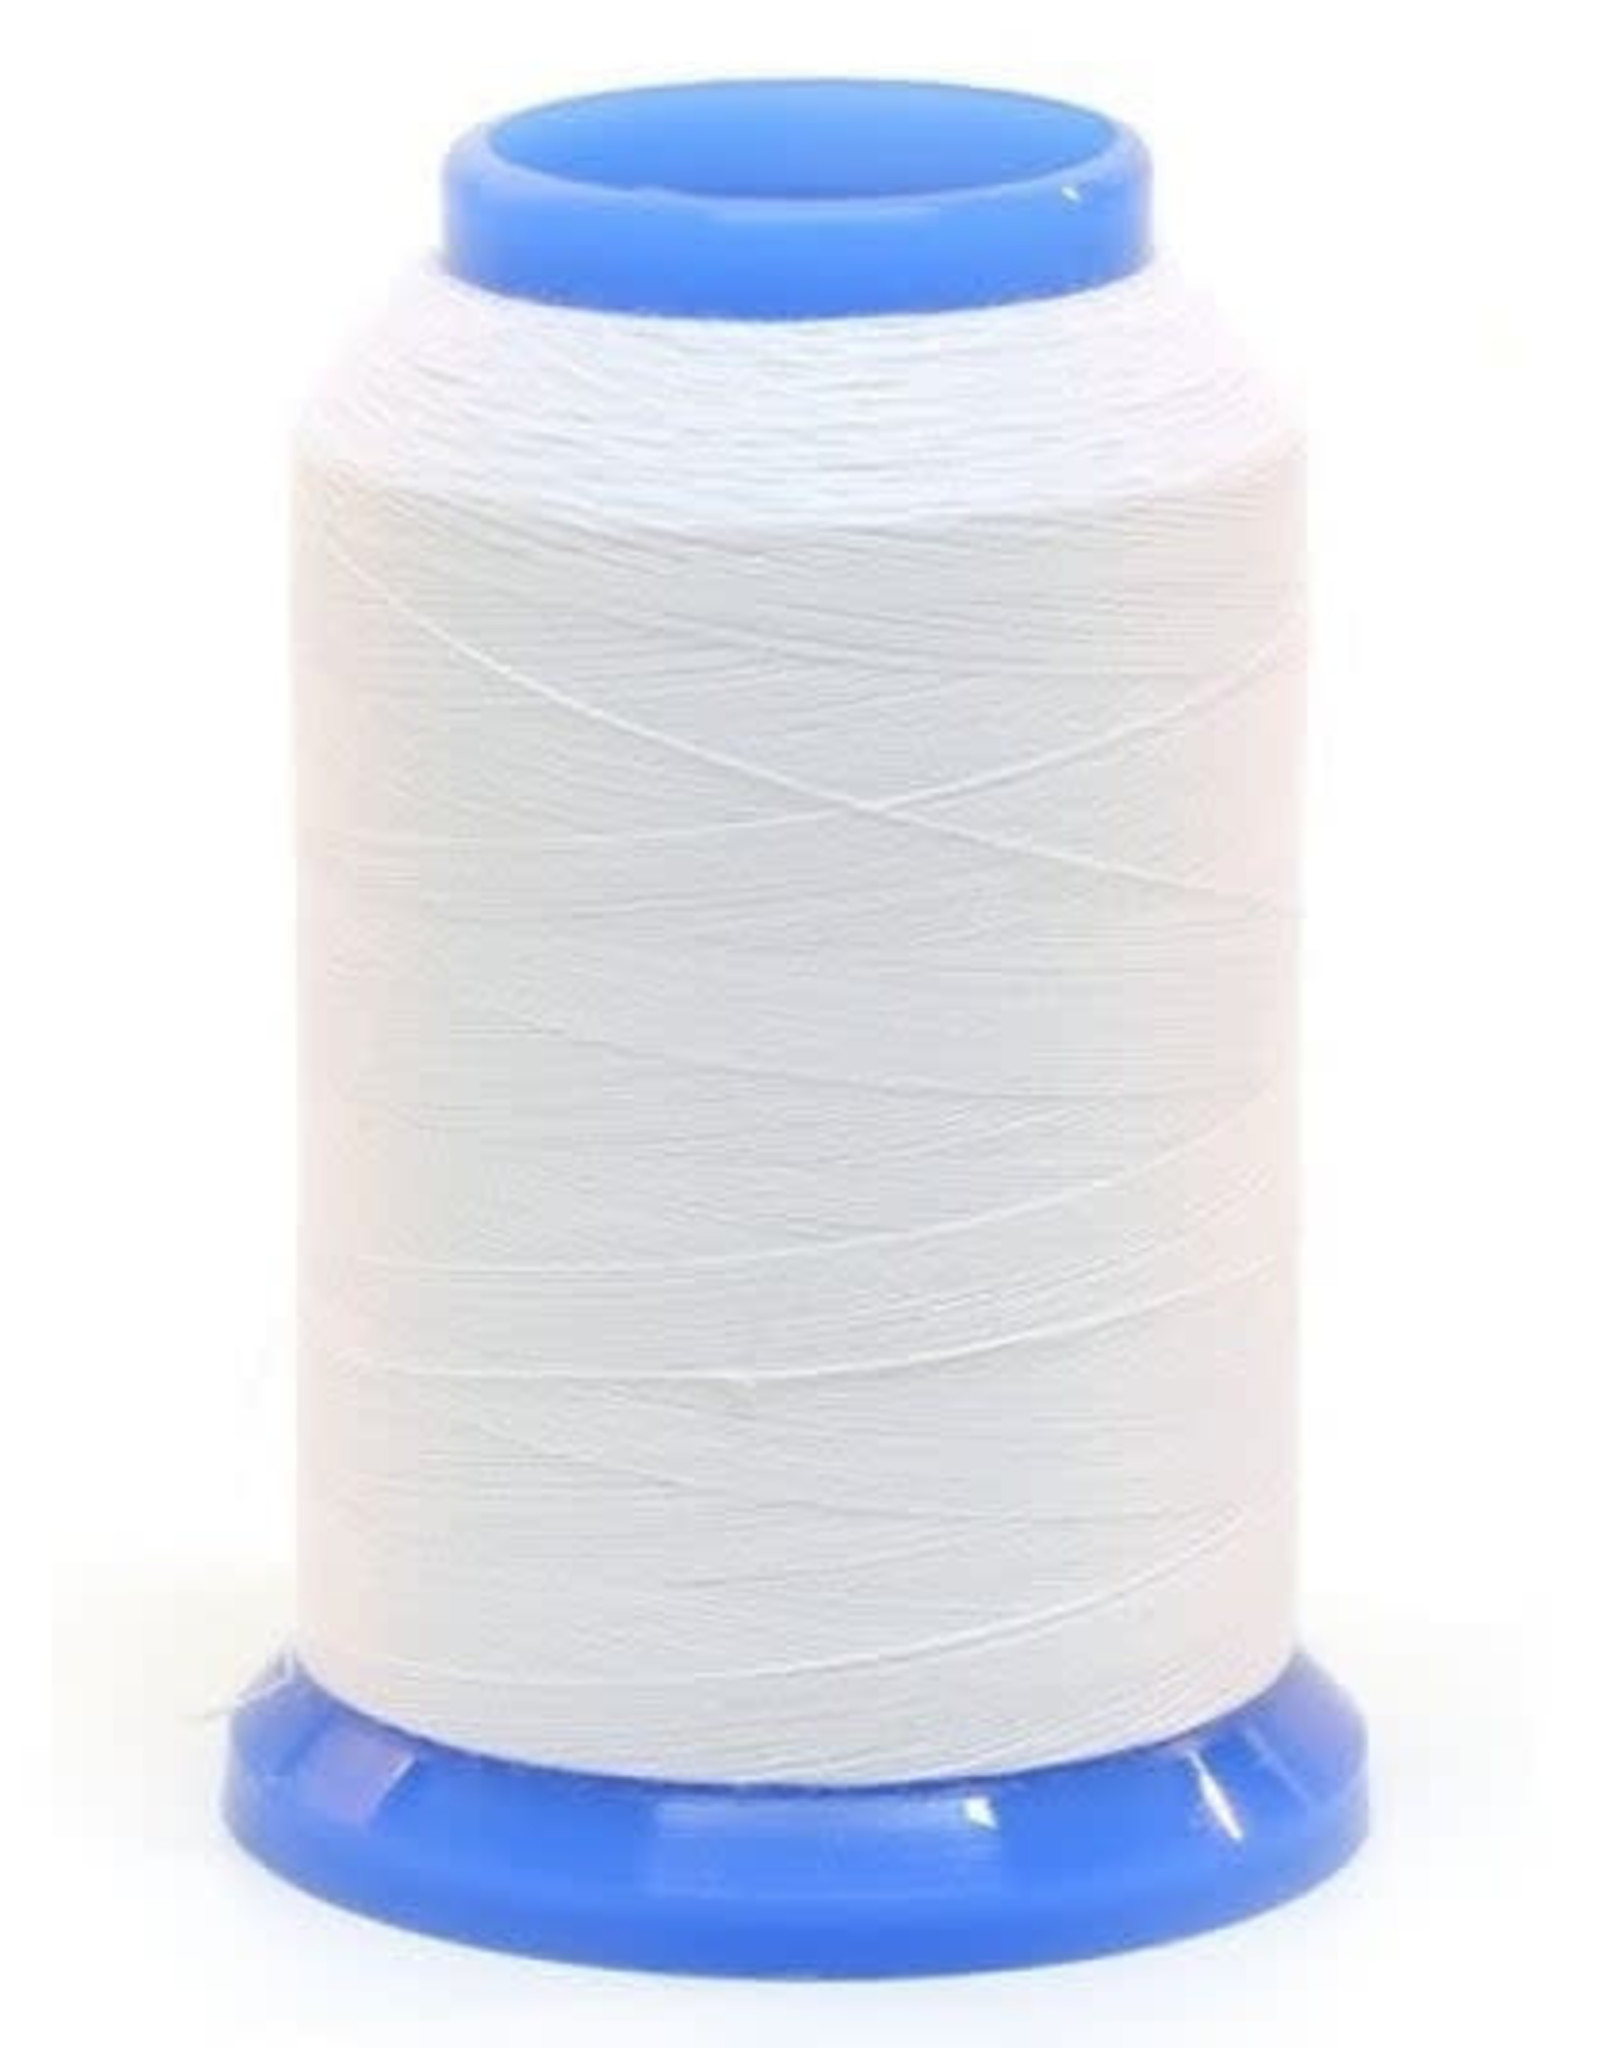 Janome Bobbin Thread White 1600m (Embroidery)